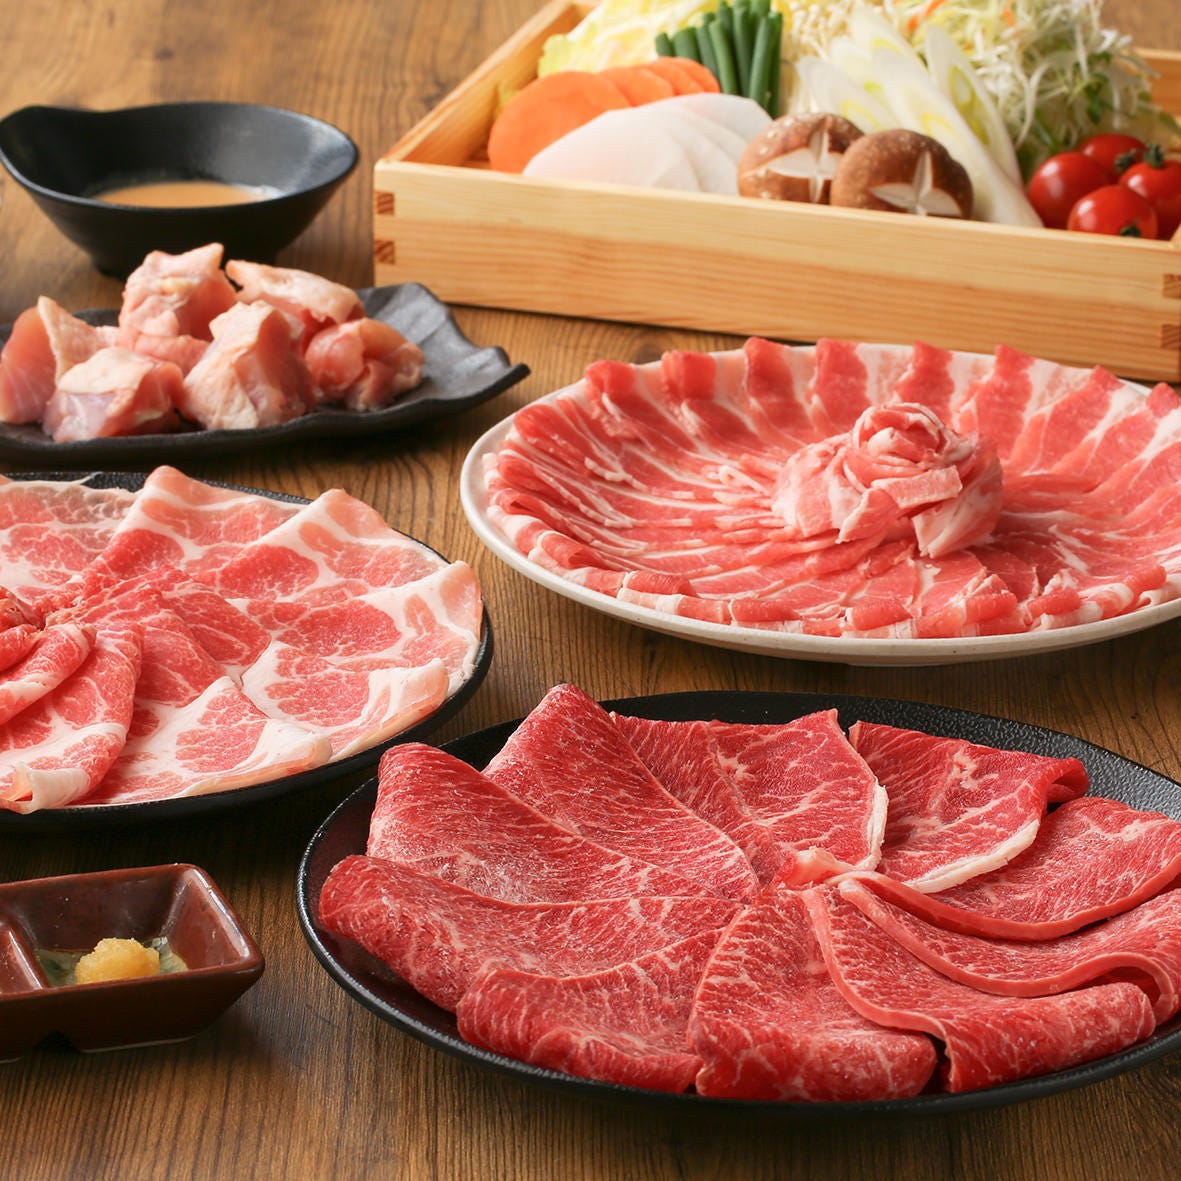 【しゃぶしゃぶ肉4種類】牛肉と三元豚 食べ飲み放題コース